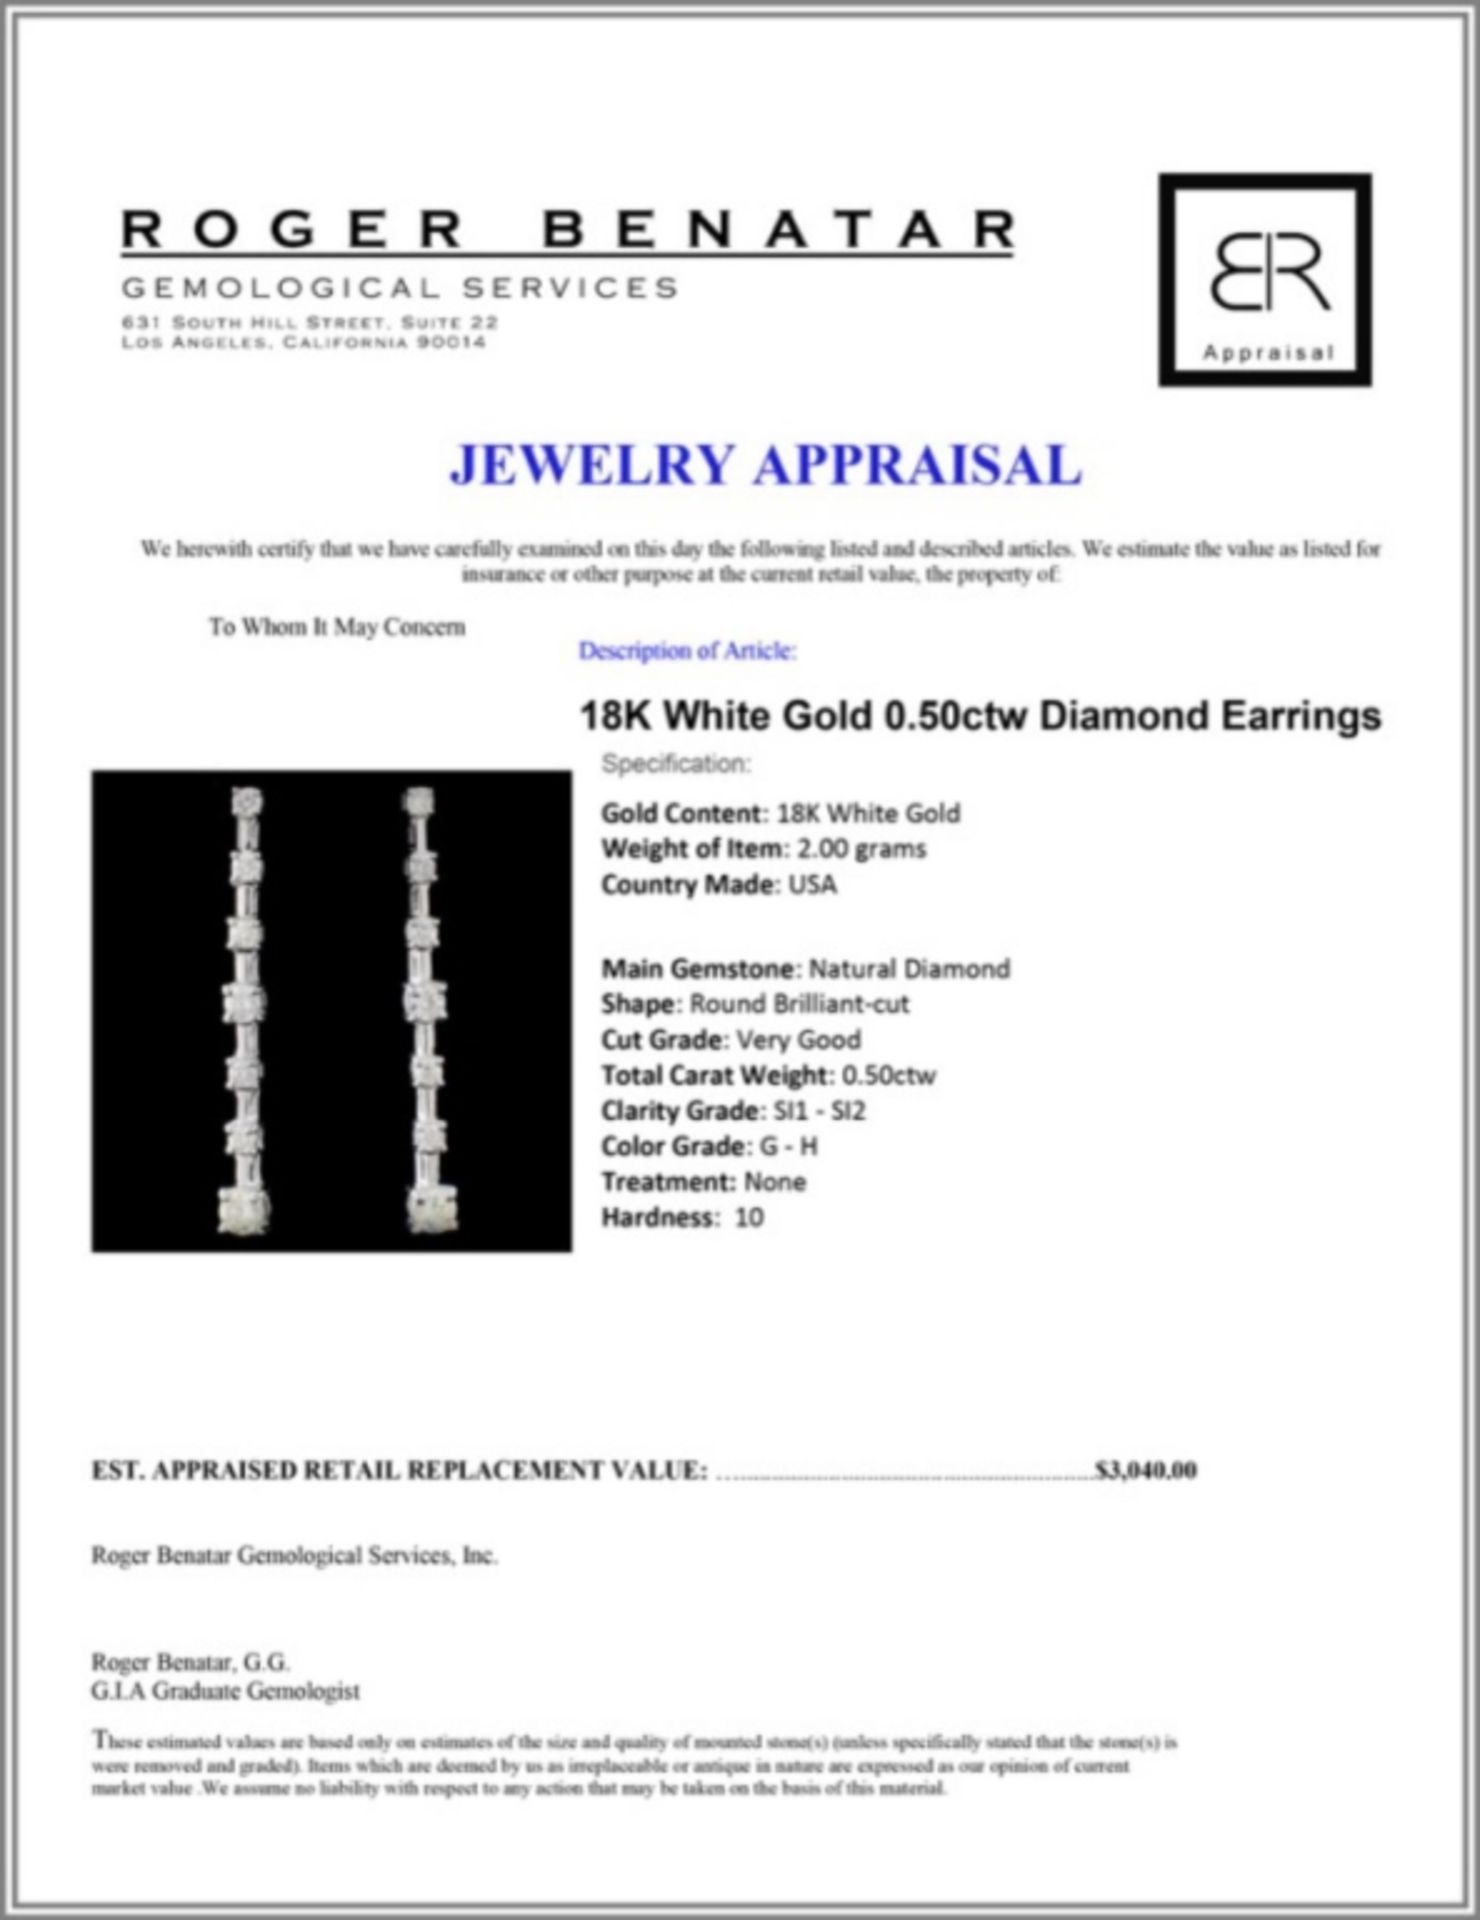 18K White Gold 0.50ctw Diamond Earrings - Image 3 of 3